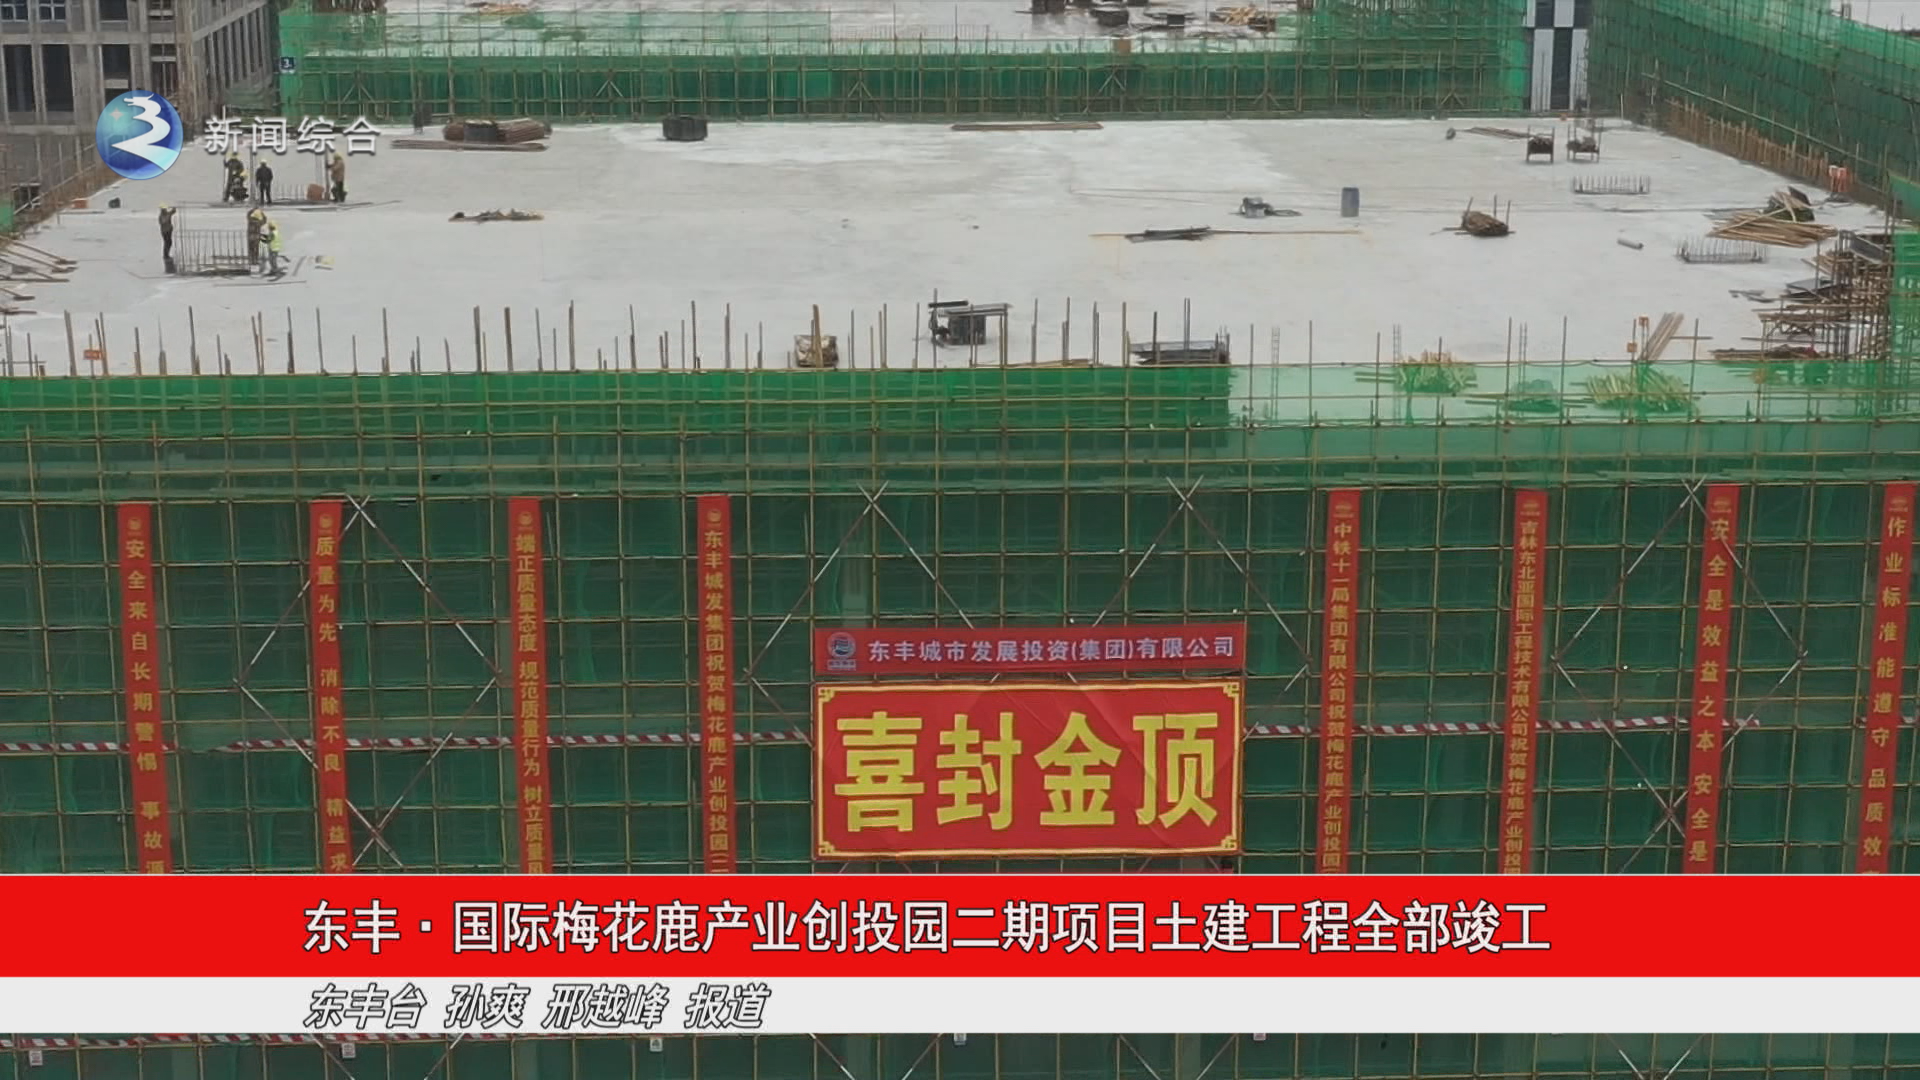 东丰•国际梅花鹿产业创投园二期项目土建工程全部竣工